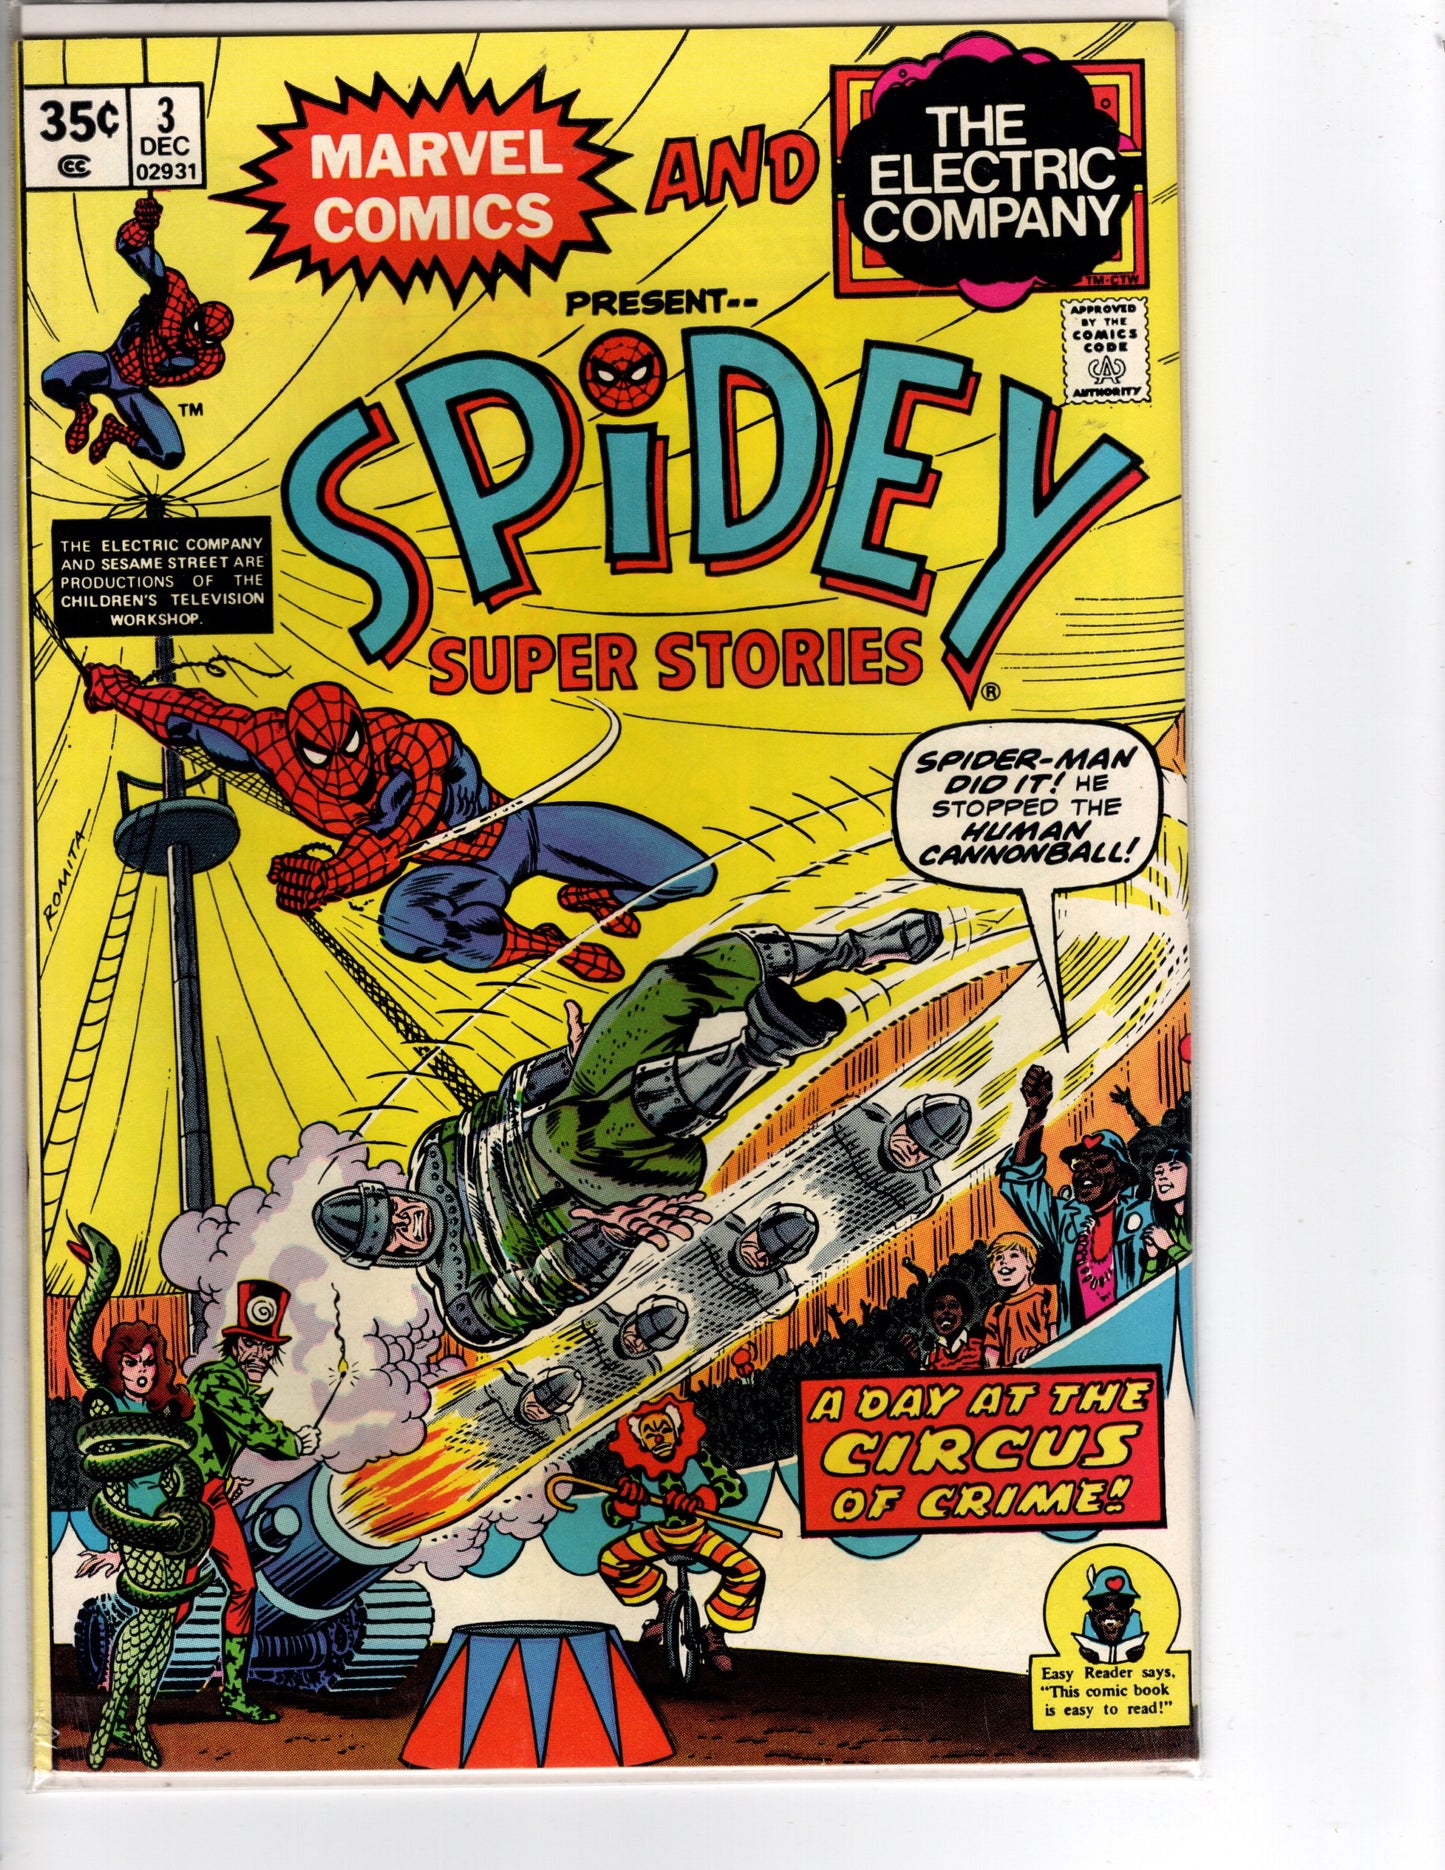 Spidey Super Stories #3